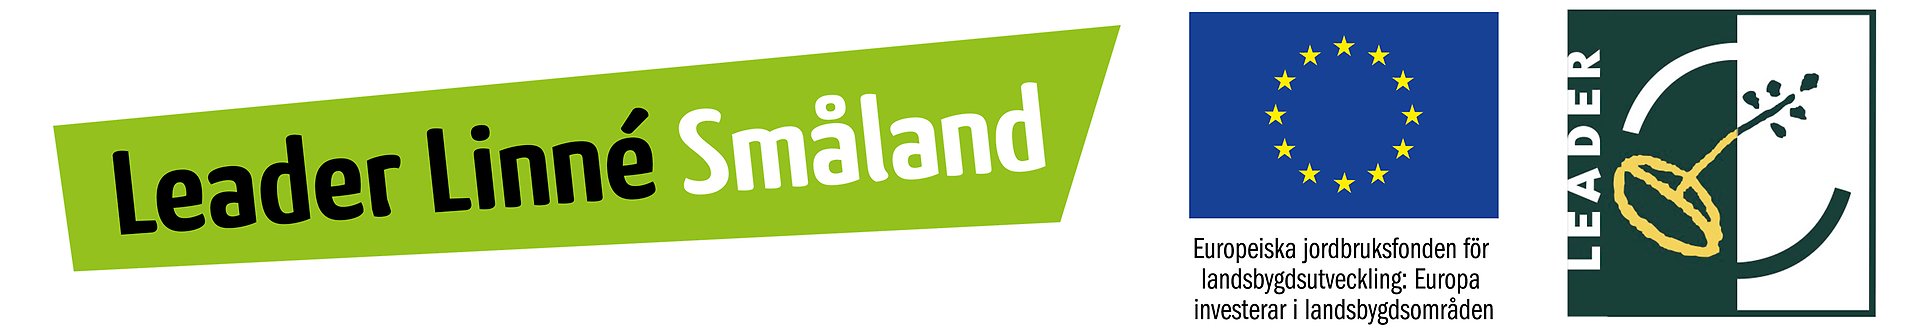  Bilden visar tre logotyper: "Leader Linné Småland" i grönt, EU-flaggan med texten om jordbruksfonden för landsbygdsutveckling, och "LEADER" med en växtsymbol. De representerar ett landsbygdsutvecklingsinitiativ i Småland stöttat av EU.